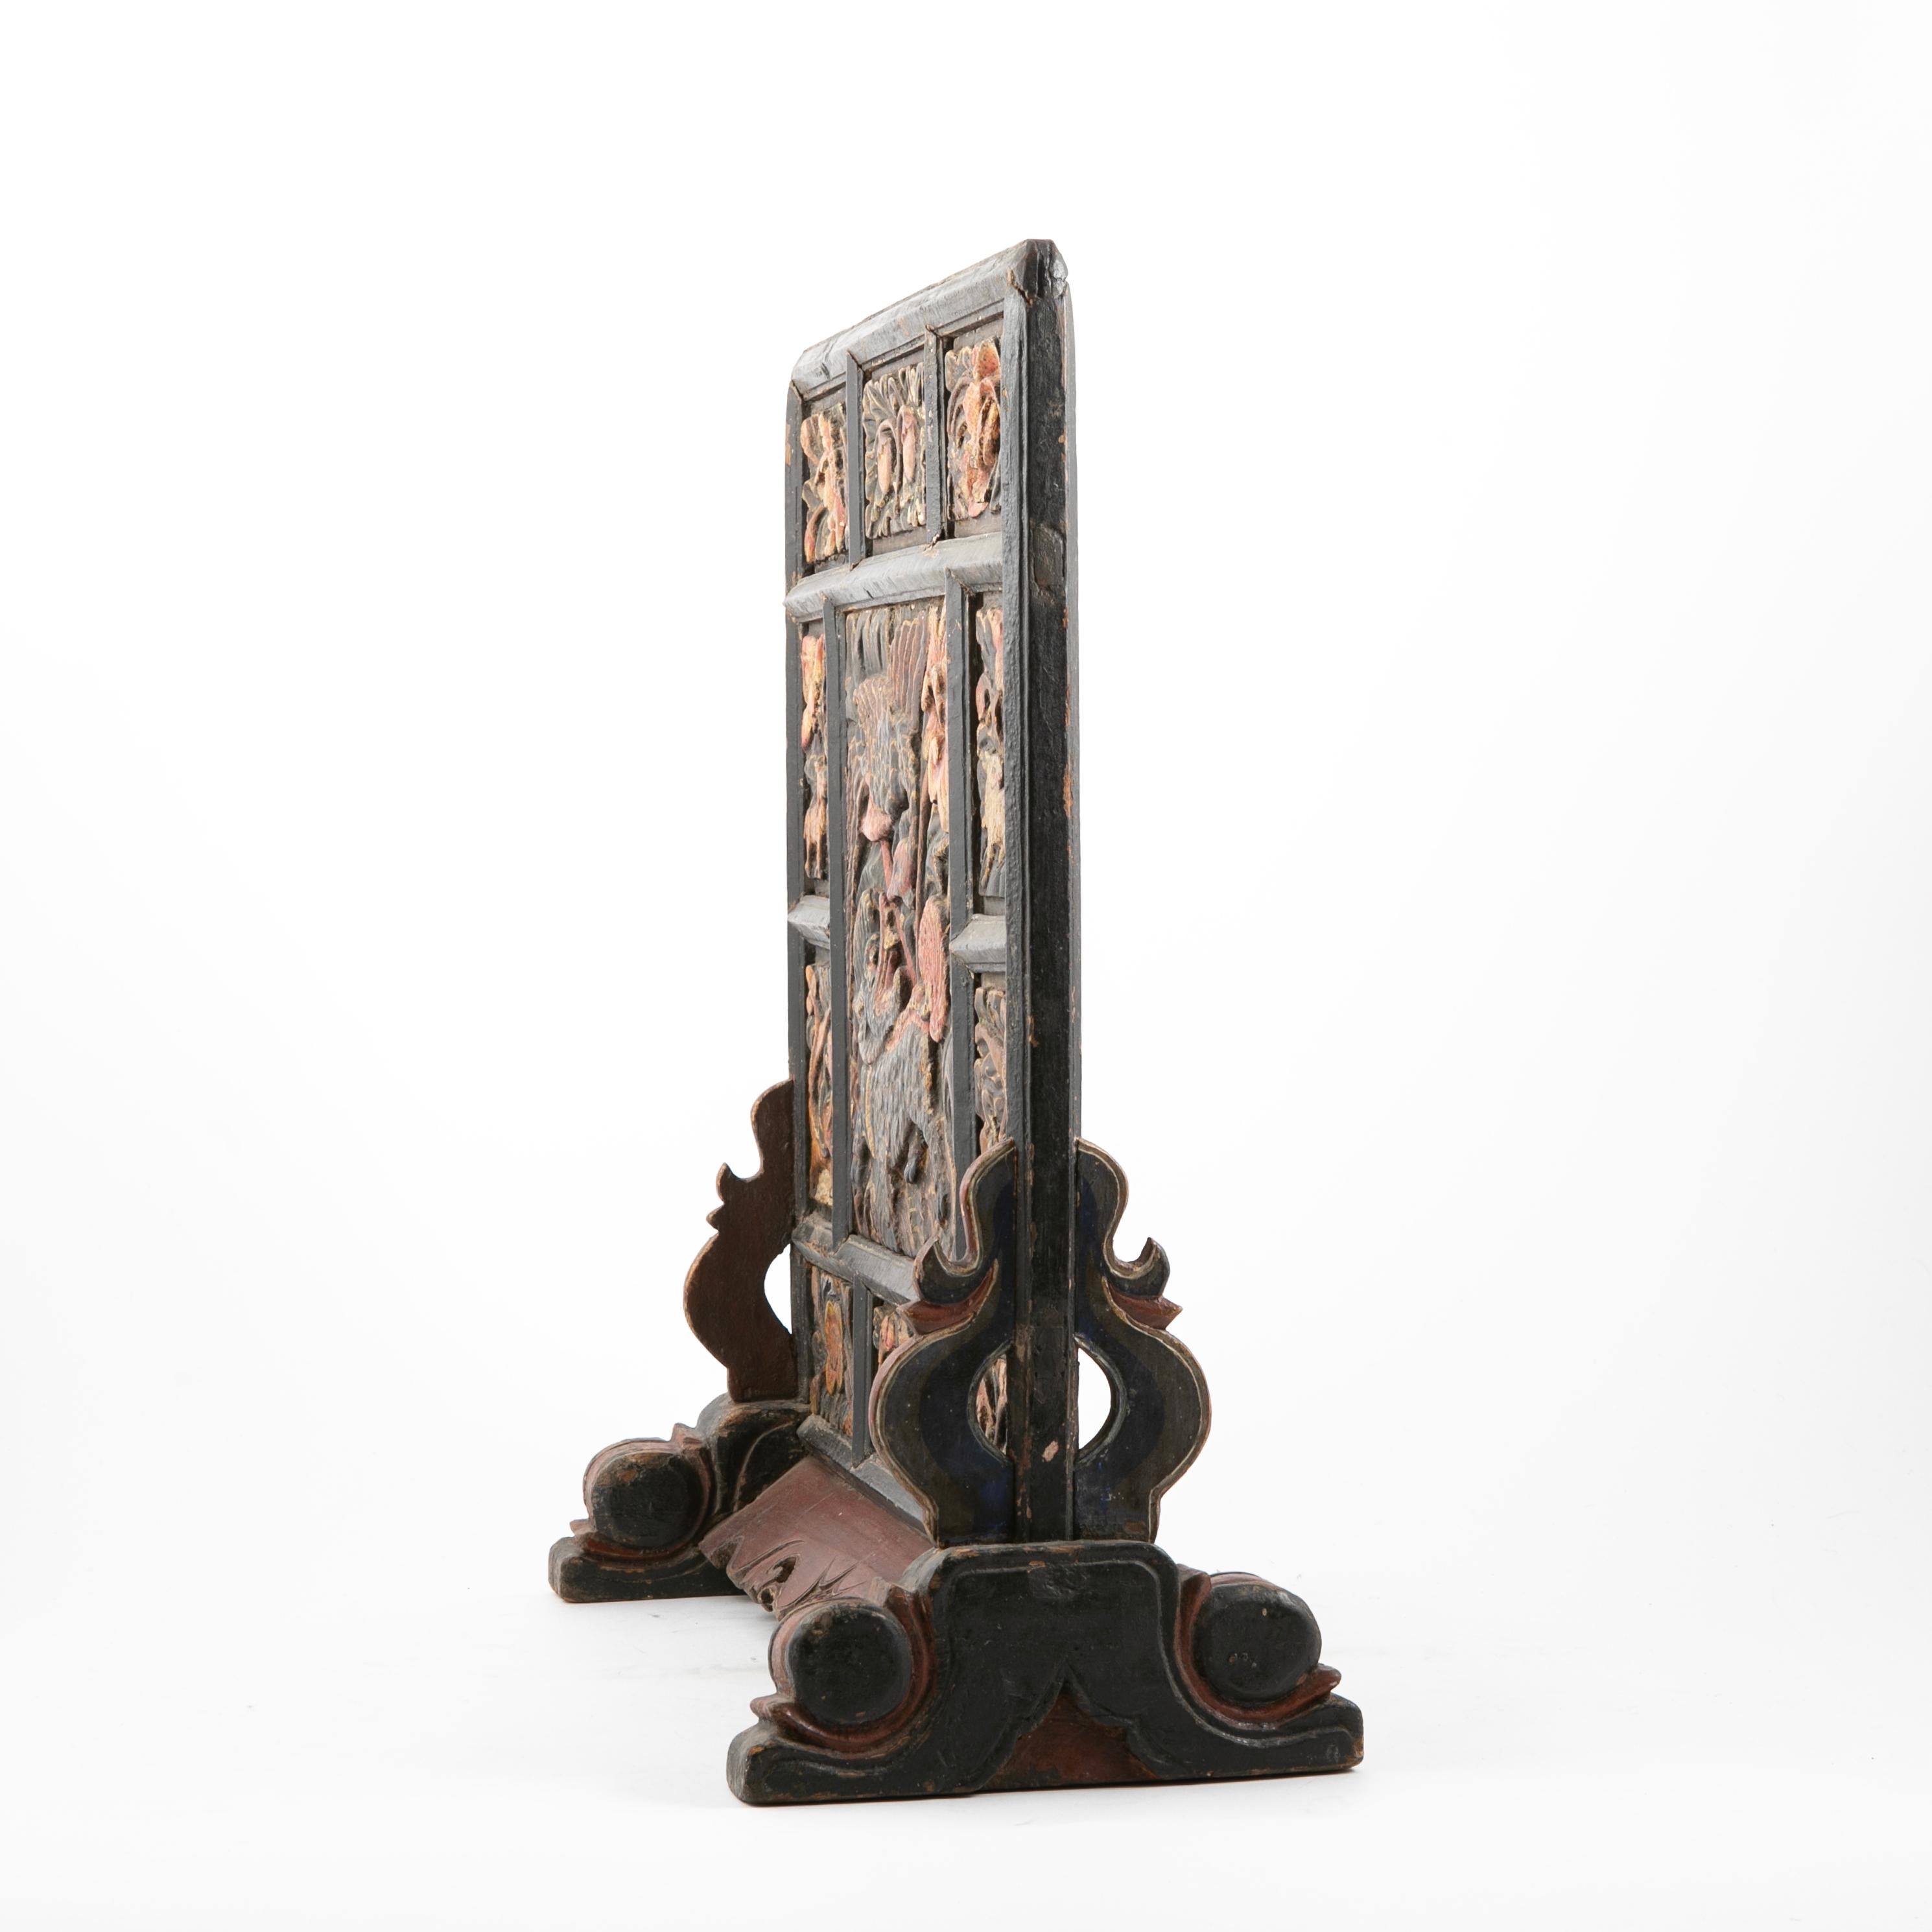 Eine seltene 16-17. Jahrhundert Ming-Dynastie stehend Tabelle Bildschirm. Unveränderter Originalzustand.
Handgeschnitztes Holz, das Paneel ist mit Relief-Details geschnitzt, die einen Drachen, Kraniche, mythische Tiere, Blumen, etc.etc. darstellen,